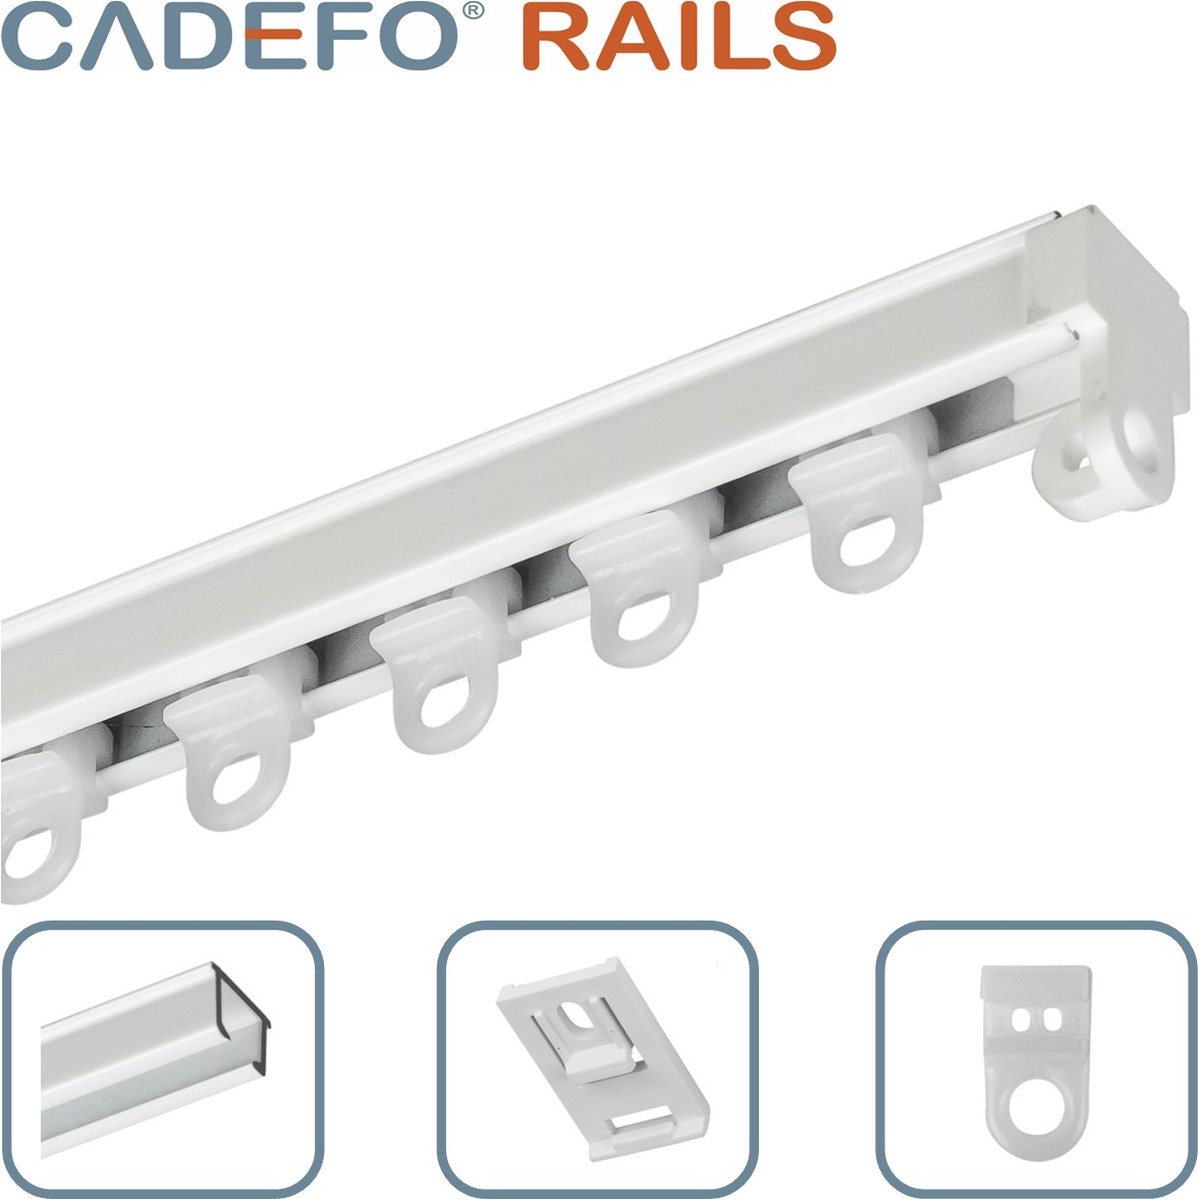 CADEFO RAILS (080 - 100 cm) Gordijnrails - Compleet op maat! - UIT 1 STUK - Leverbaar tot 6 meter - Plafondbevestiging - Lengte 81 cm